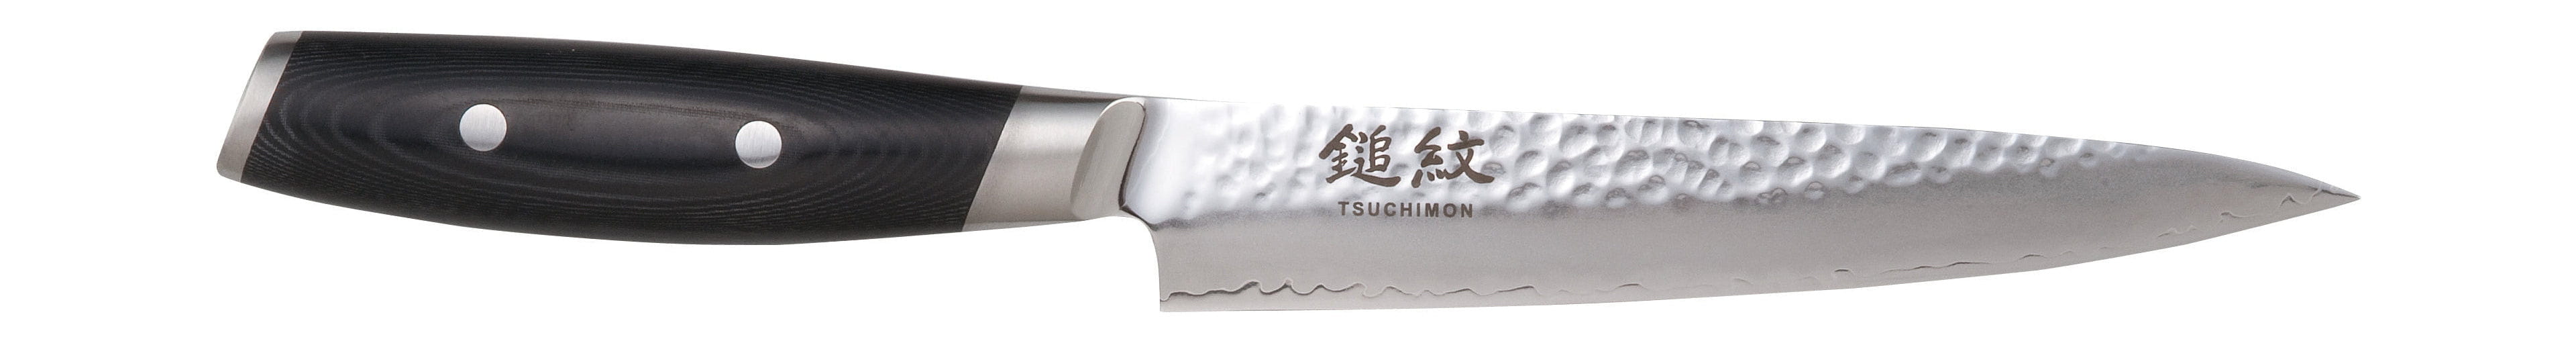 Knife rzeźbiony Yaxell Tsuchimon, 18 cm